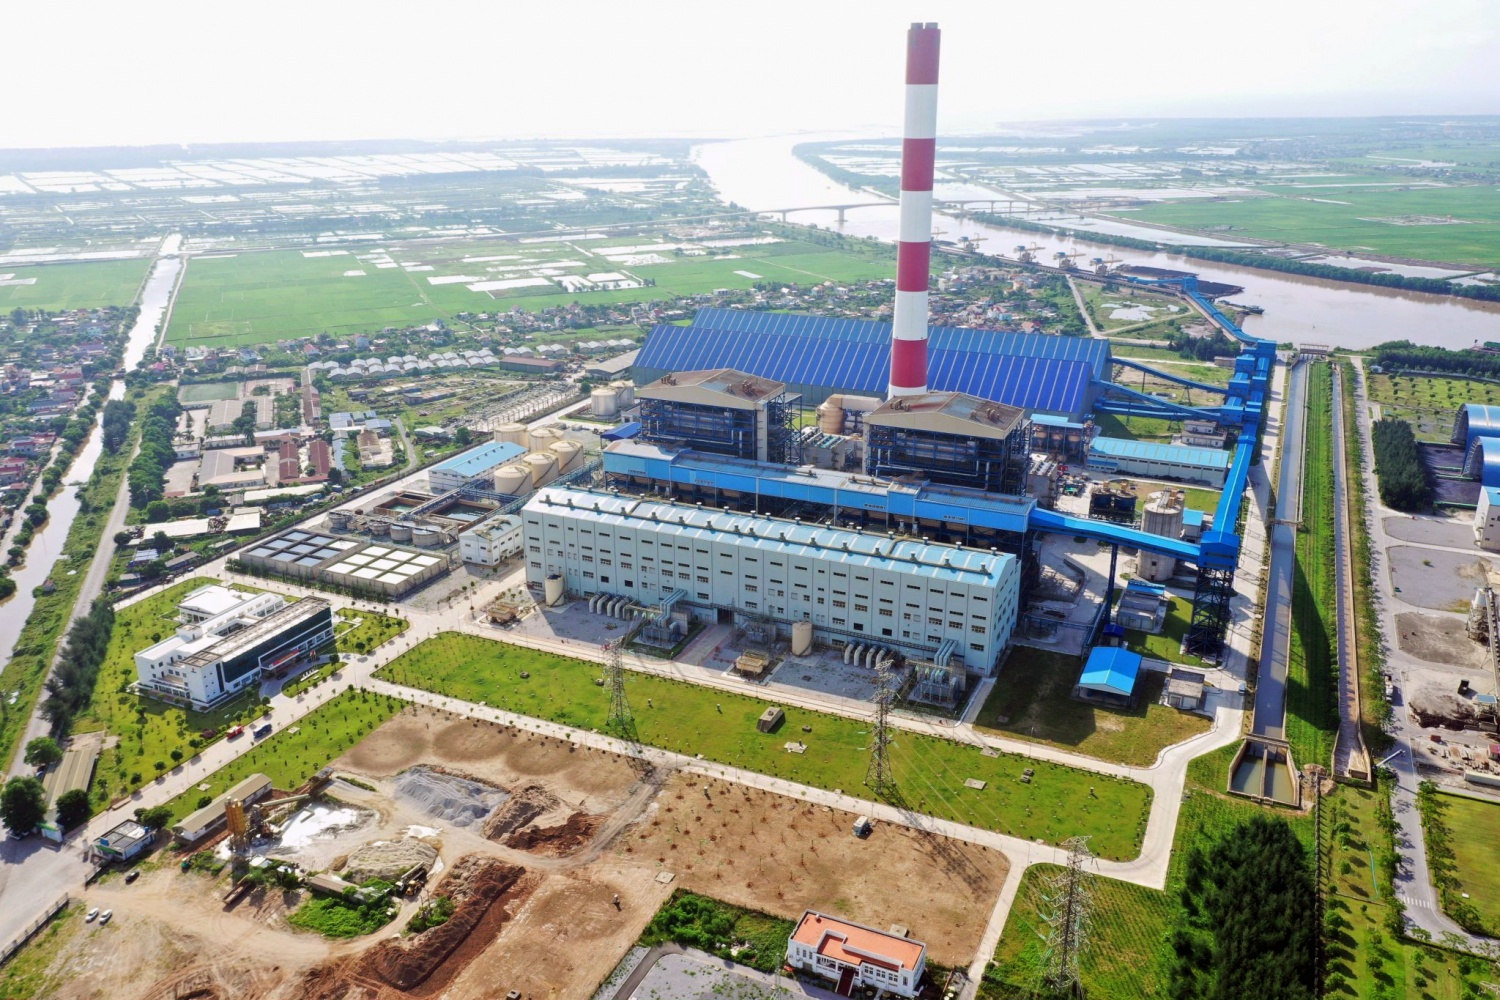 Nhà máy Nhiệt điện Thái Bình 2